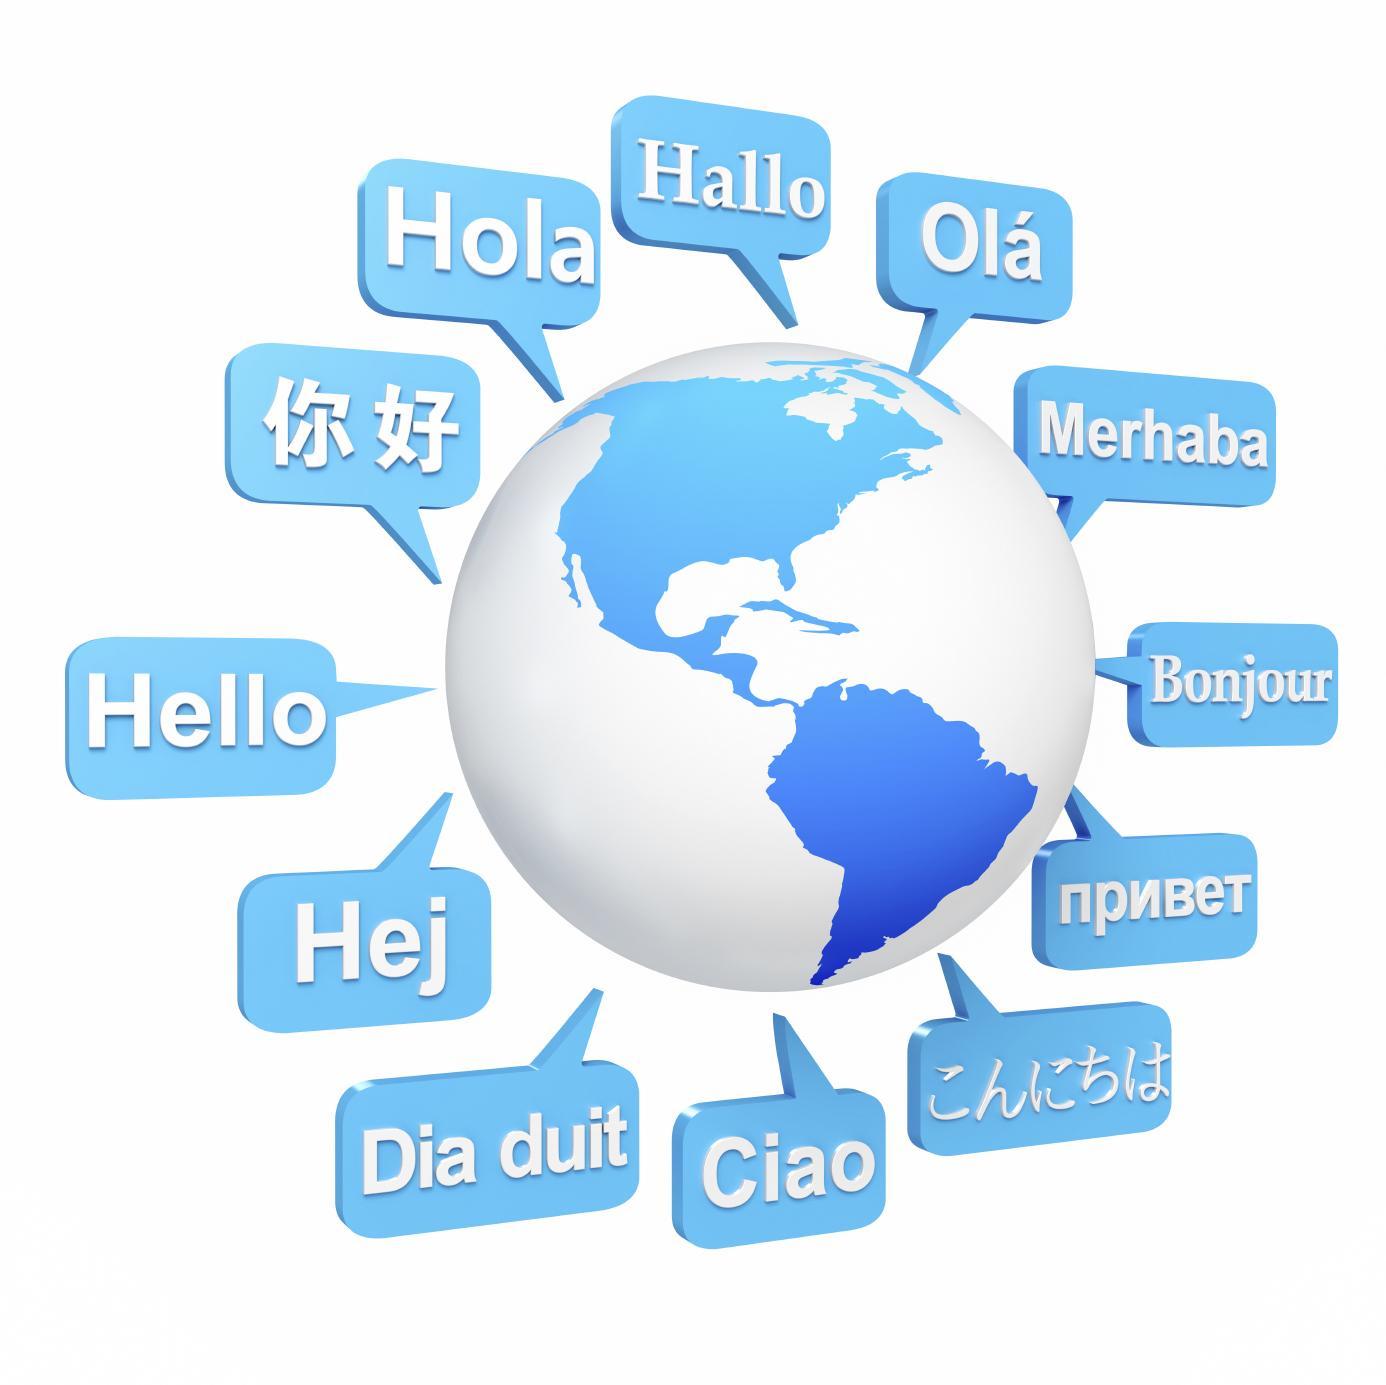 Bilgisayara Yeni Bir Dil Öğretmek: Google Translate Nasıl Çalışır?